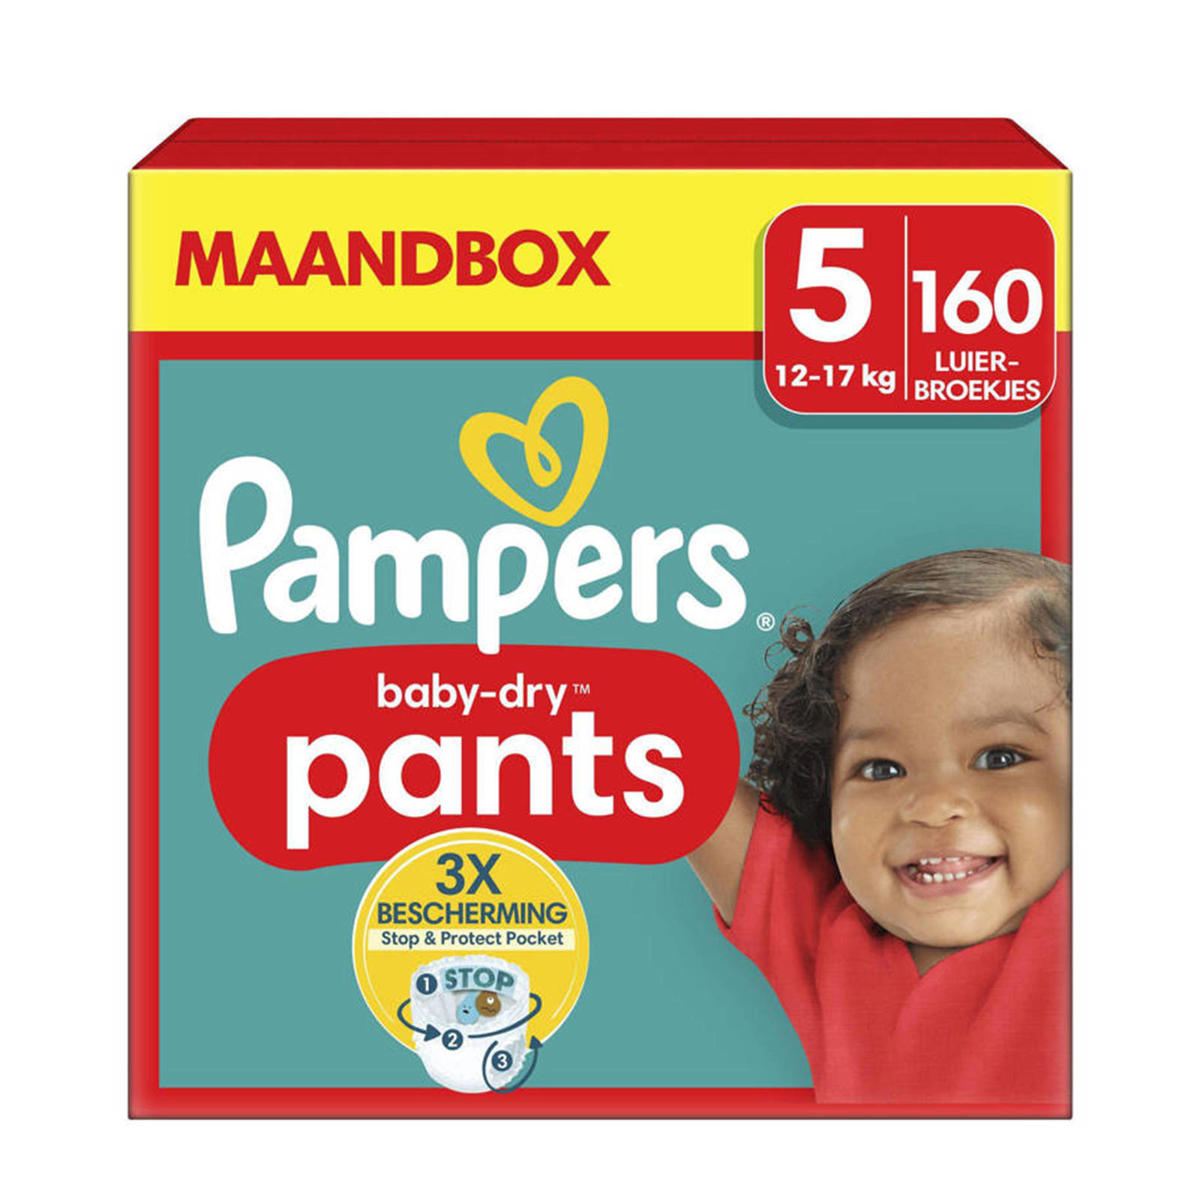 Pampers Pants Maat 5 - 160 luierbroekjes maandbox kleertjes.com